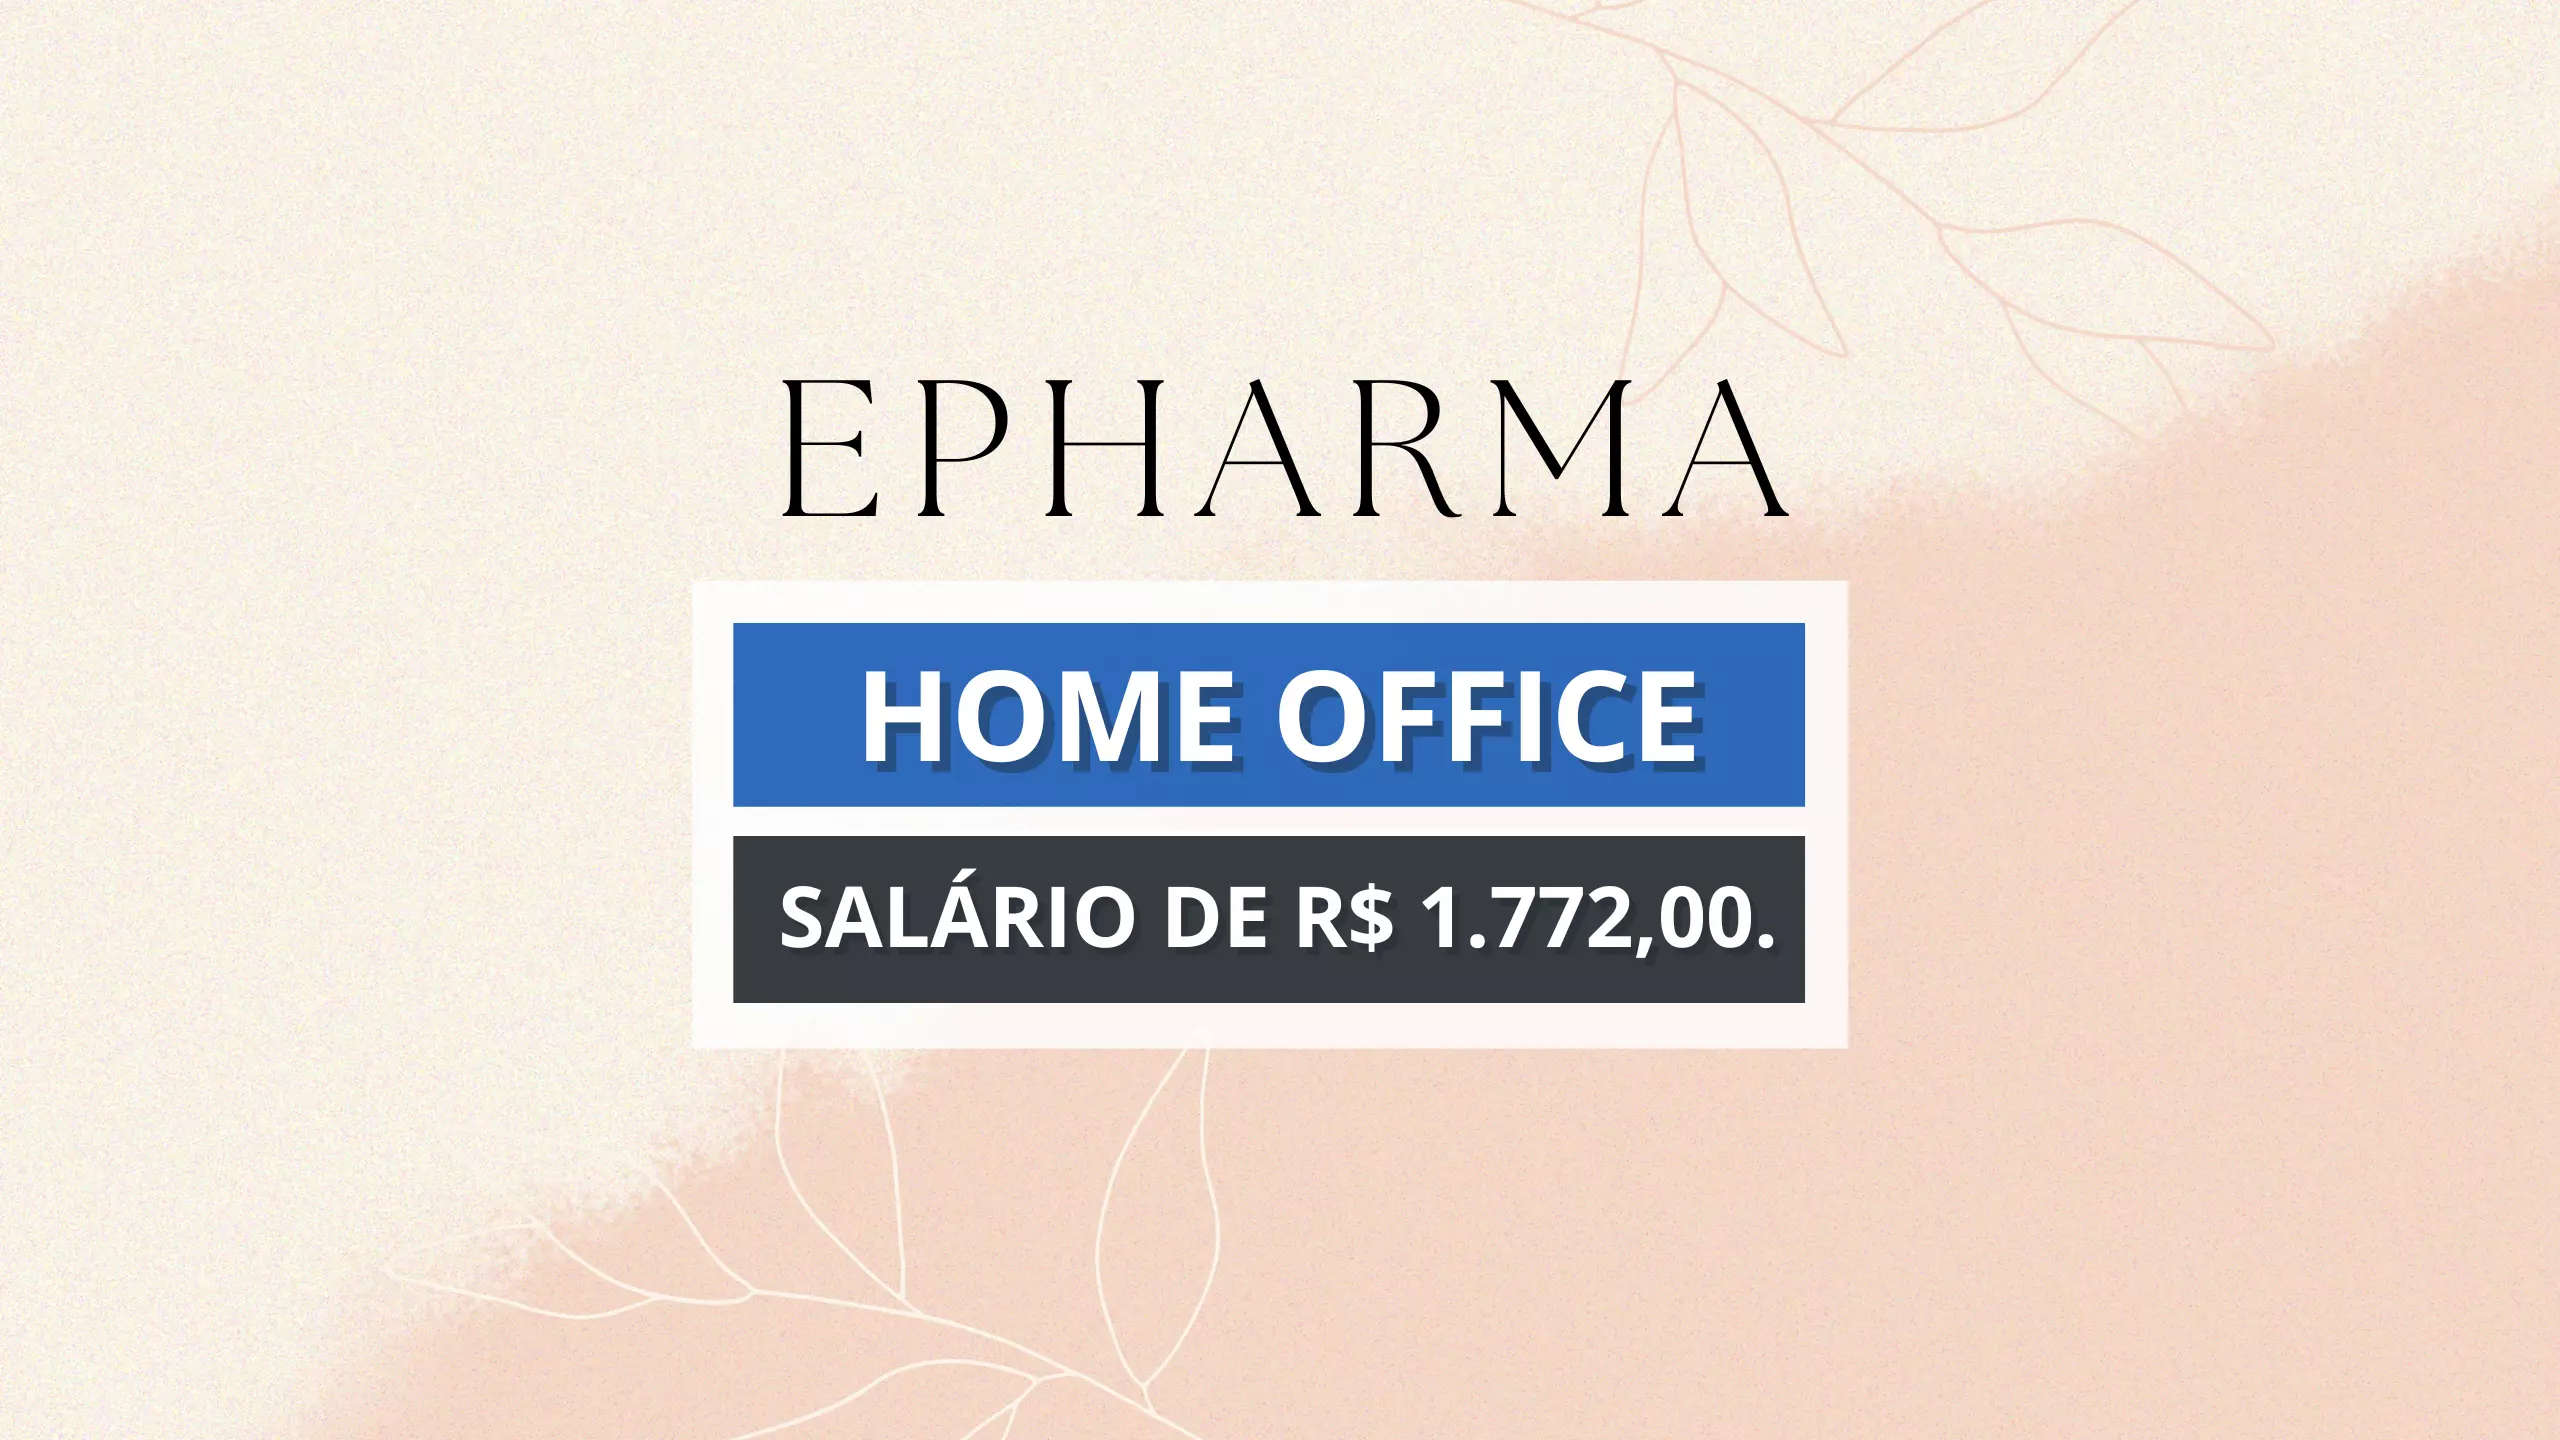 Trabalhe de Casa! Epharma anuncia vaga 100% HOME OFFICE PARA Assistente de Operações COM SALÁRIO DE R$1.772,00